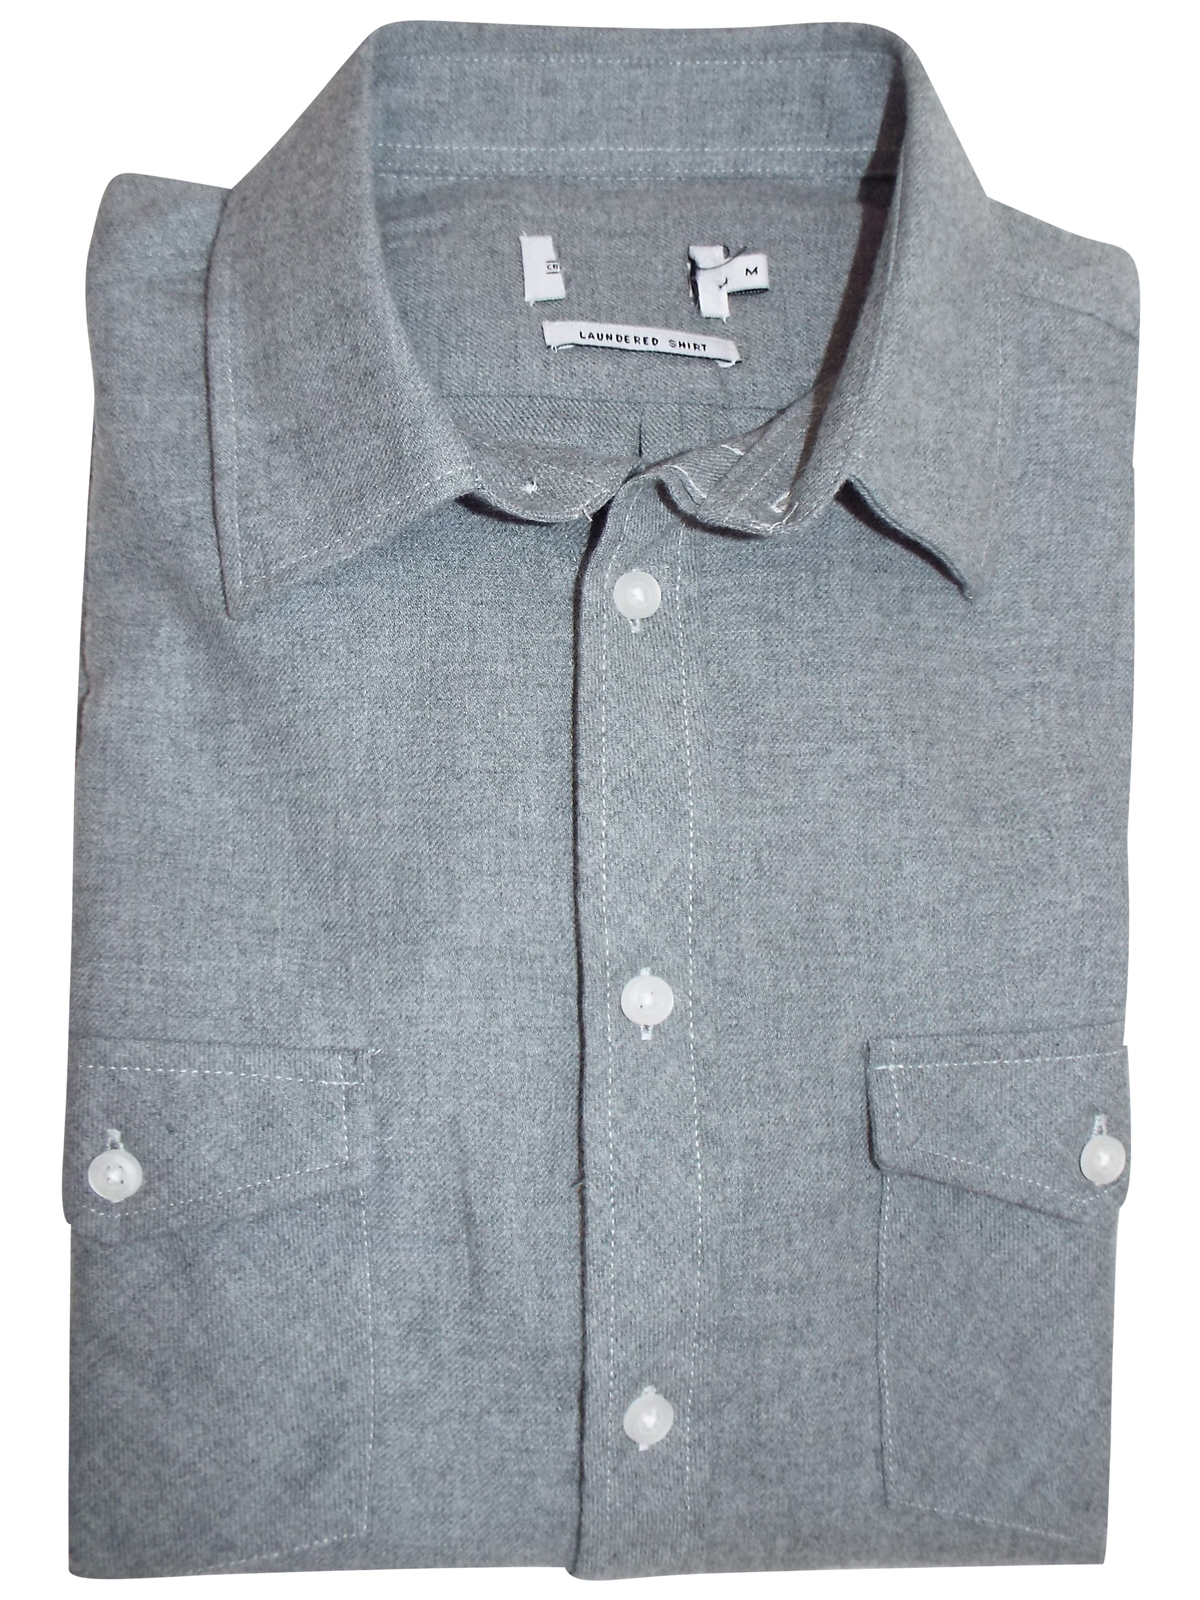 GREY Brushed Cotton Long Sleeve Shirt - Size Small to XXLarge